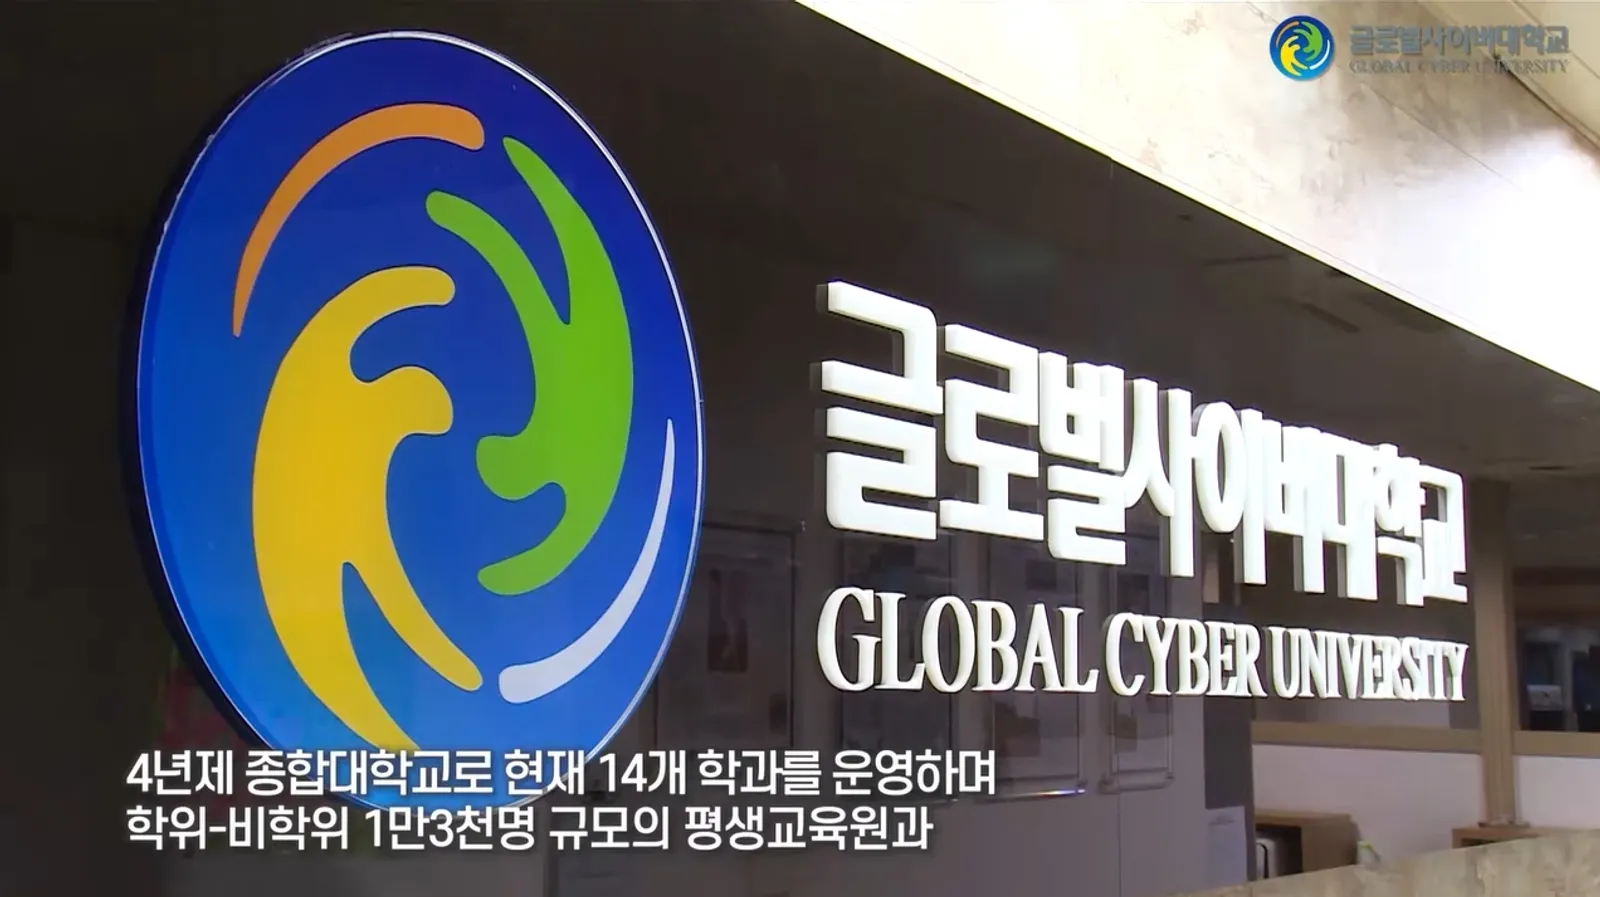 11 Potret & Fakta Menarik Kampus Jungkook BTS, Global Cyber University